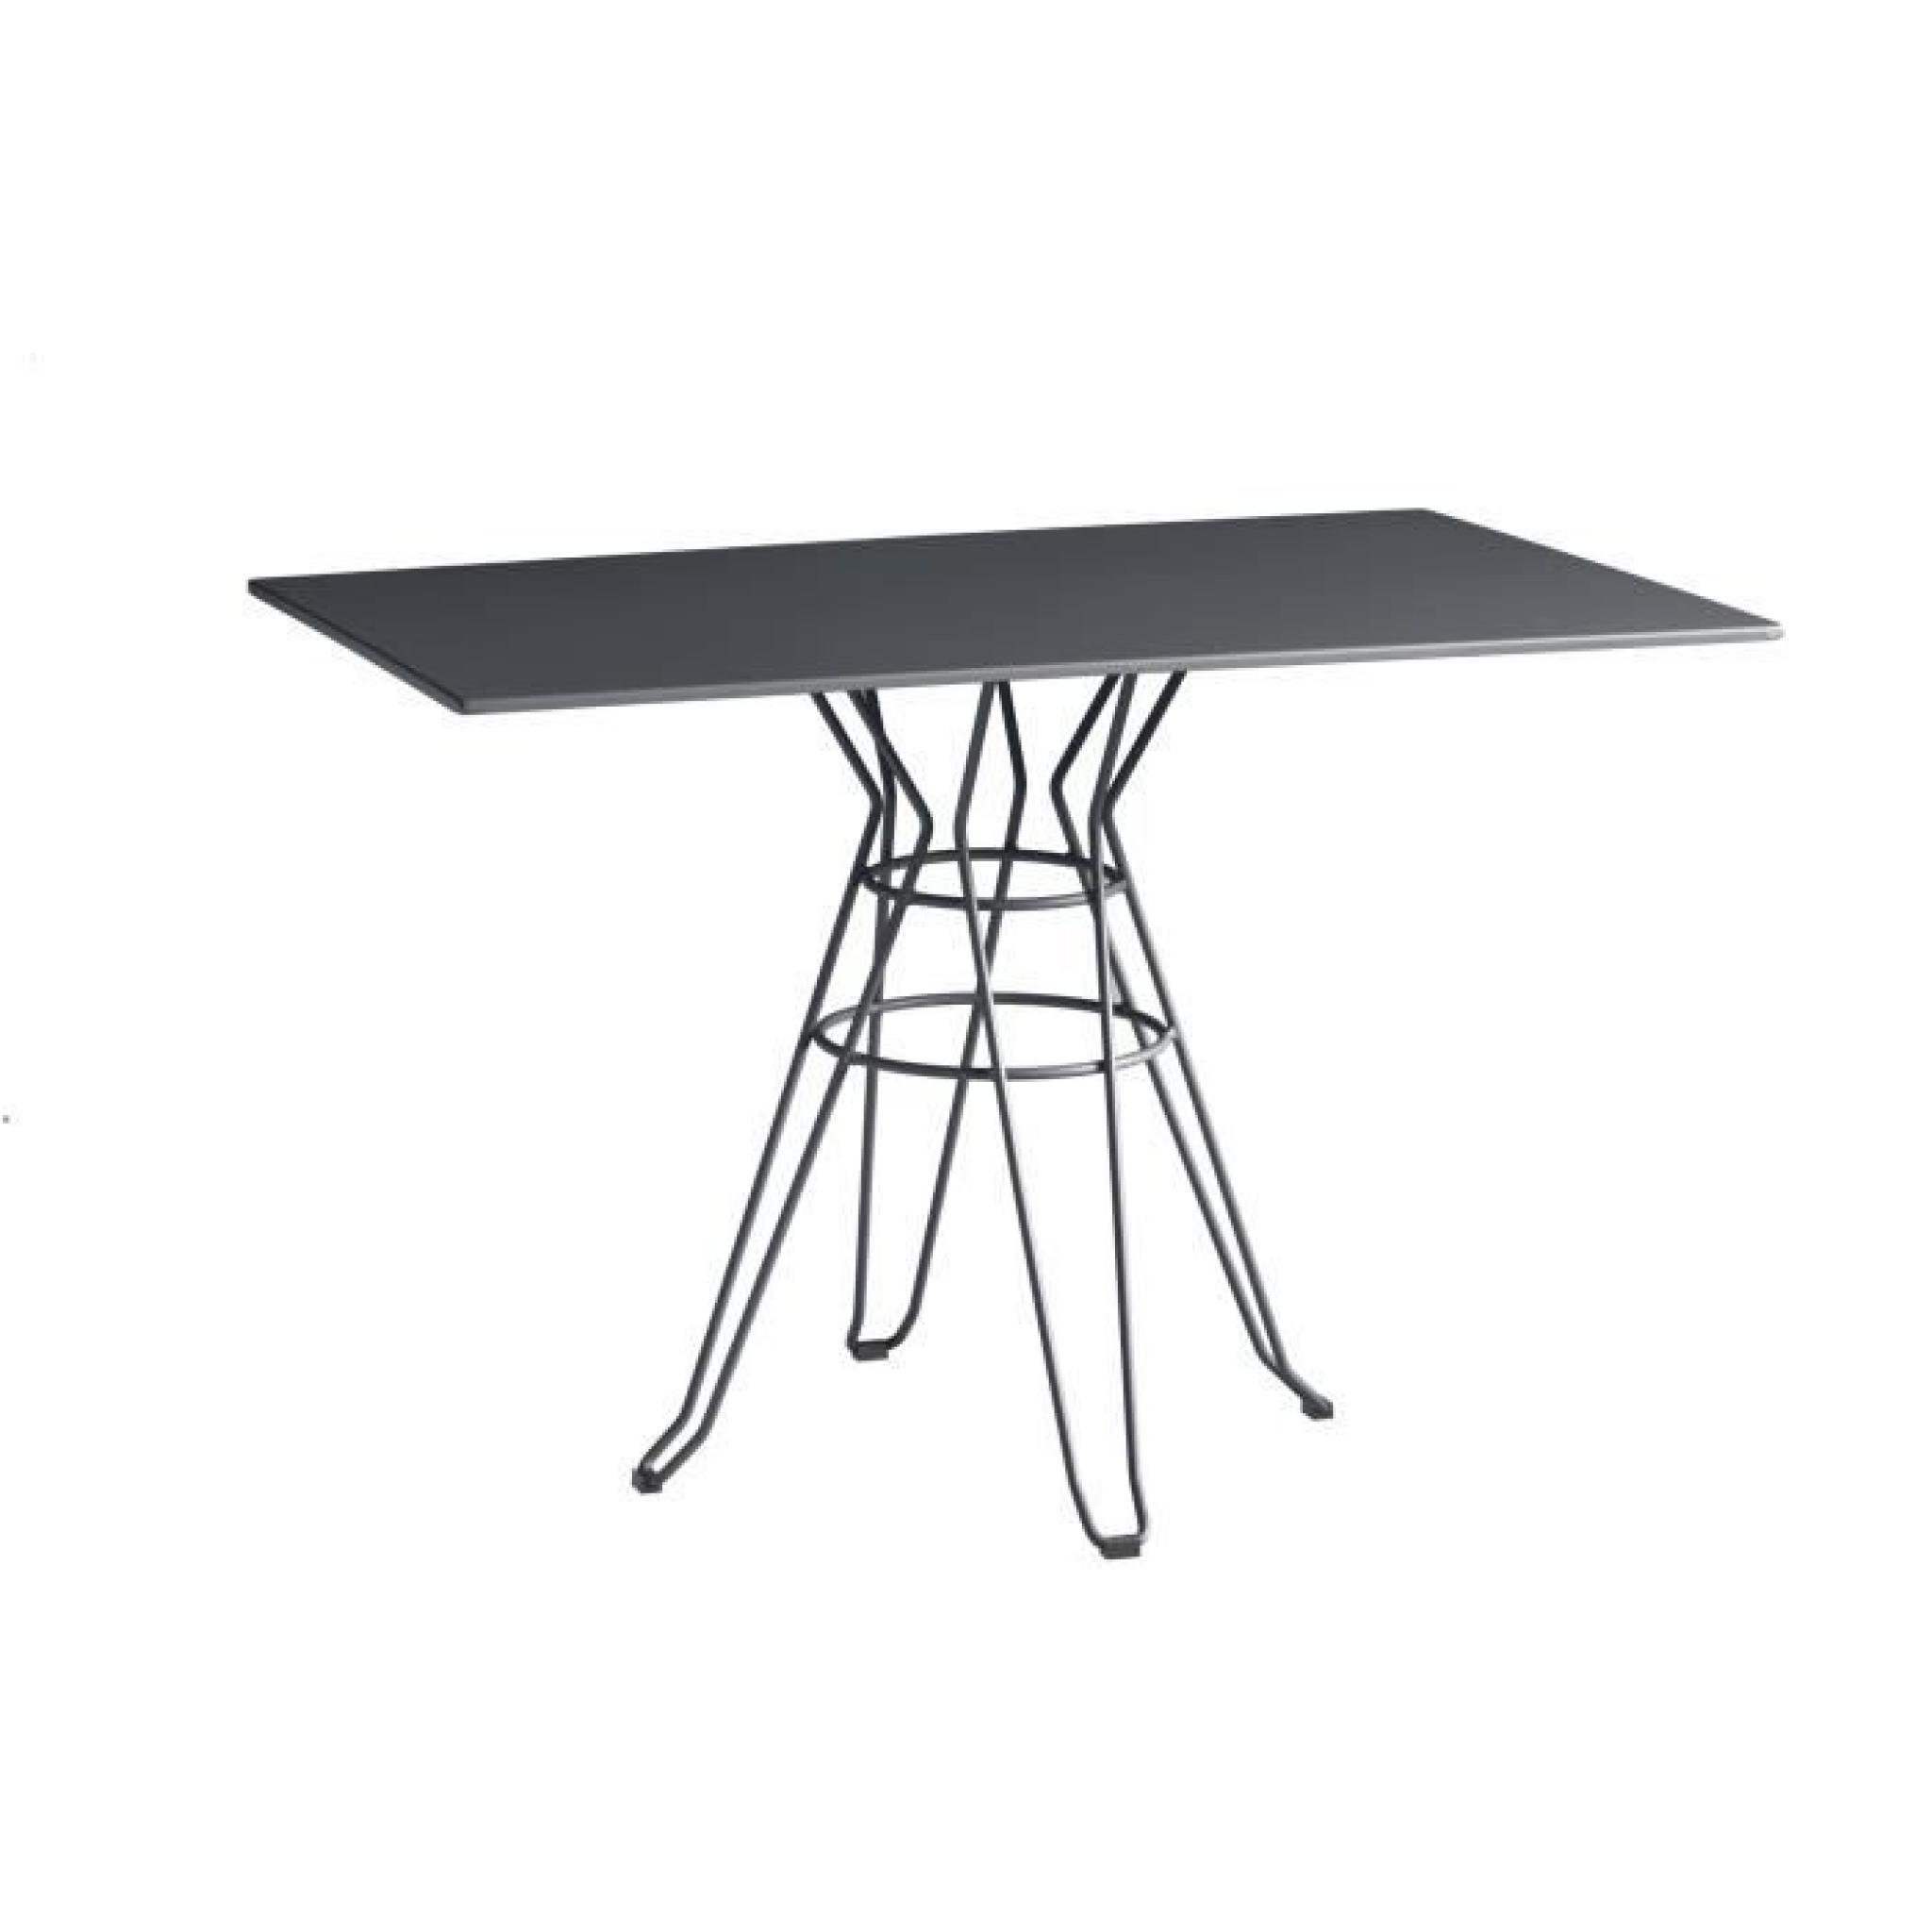 Table rectangulaire 110x70cm gris anthracite Capri